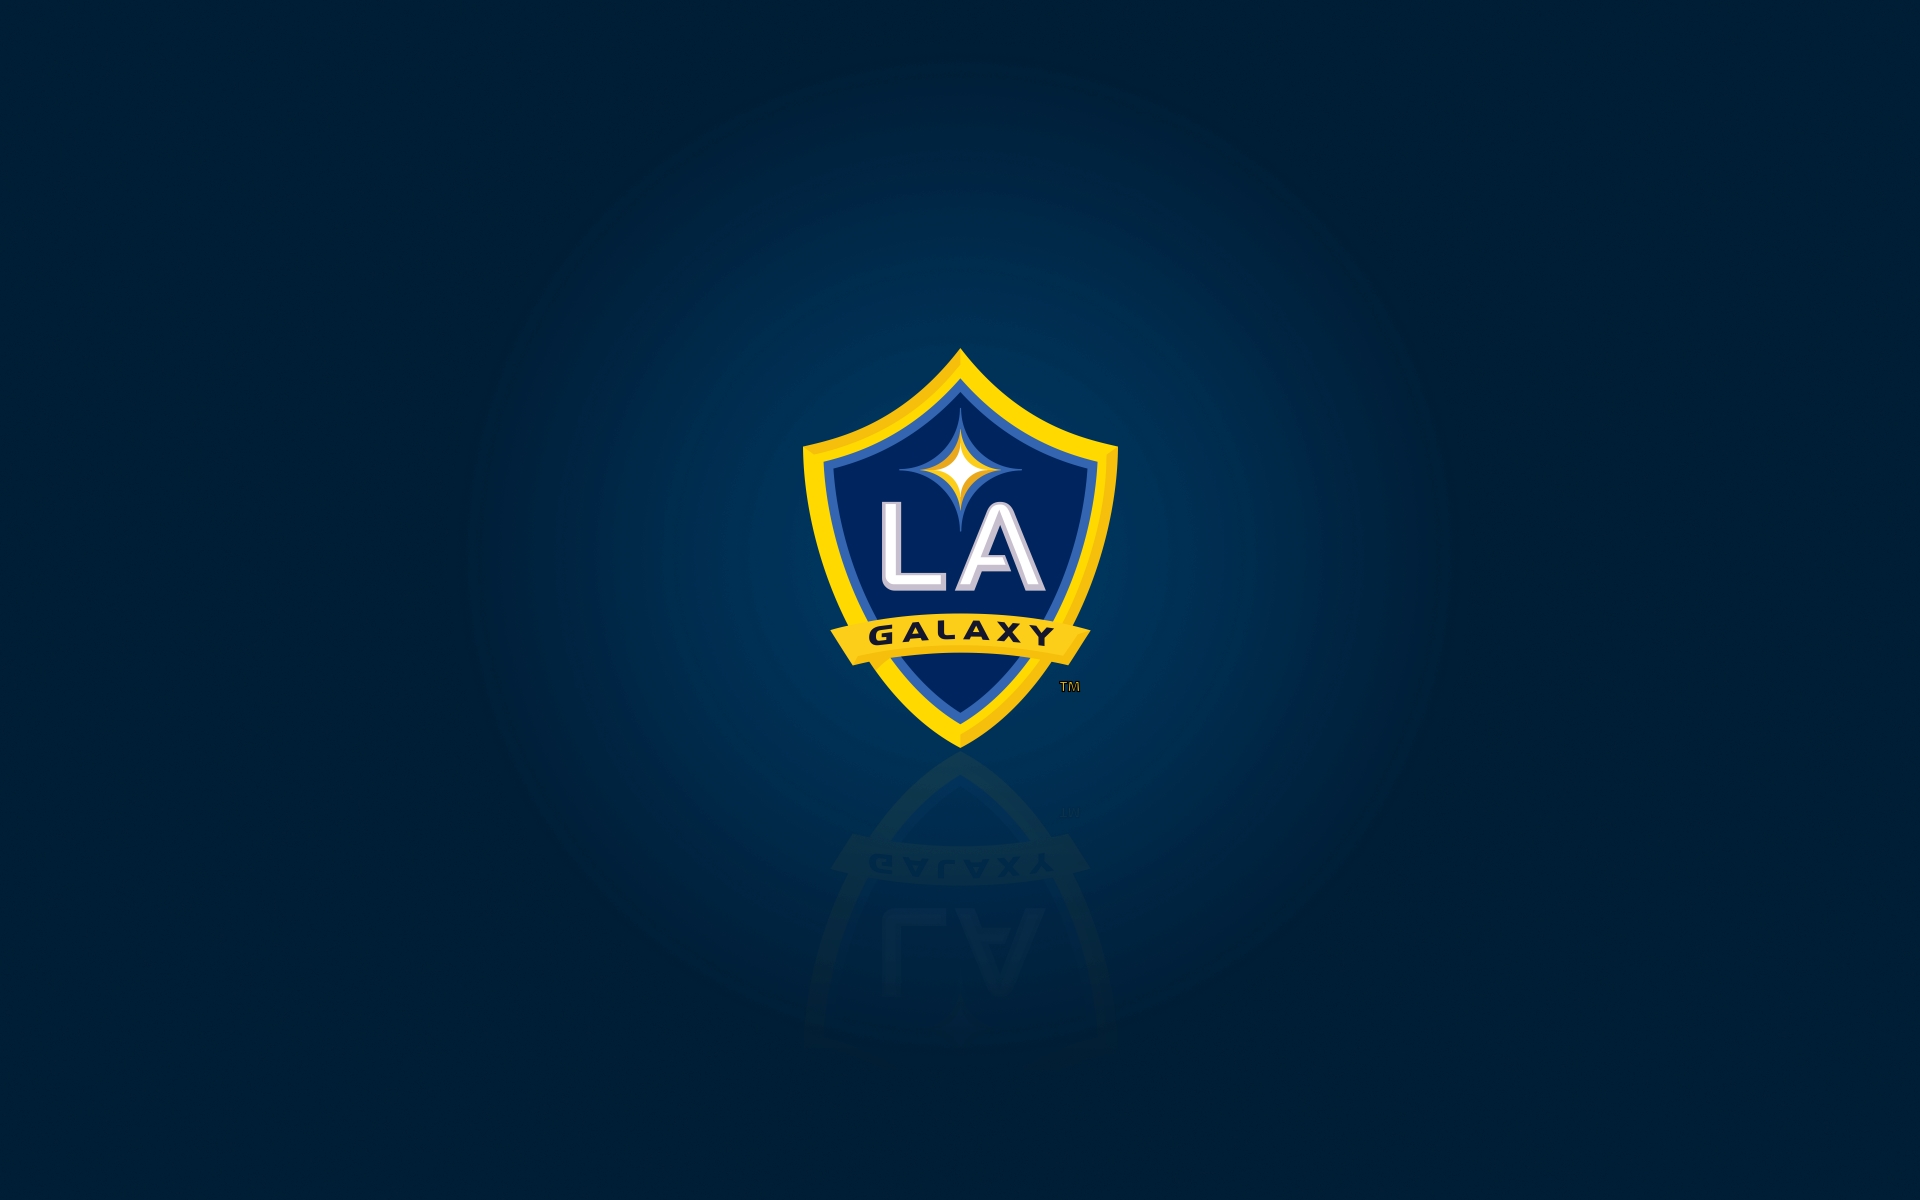 LA Galaxy – Logos Download